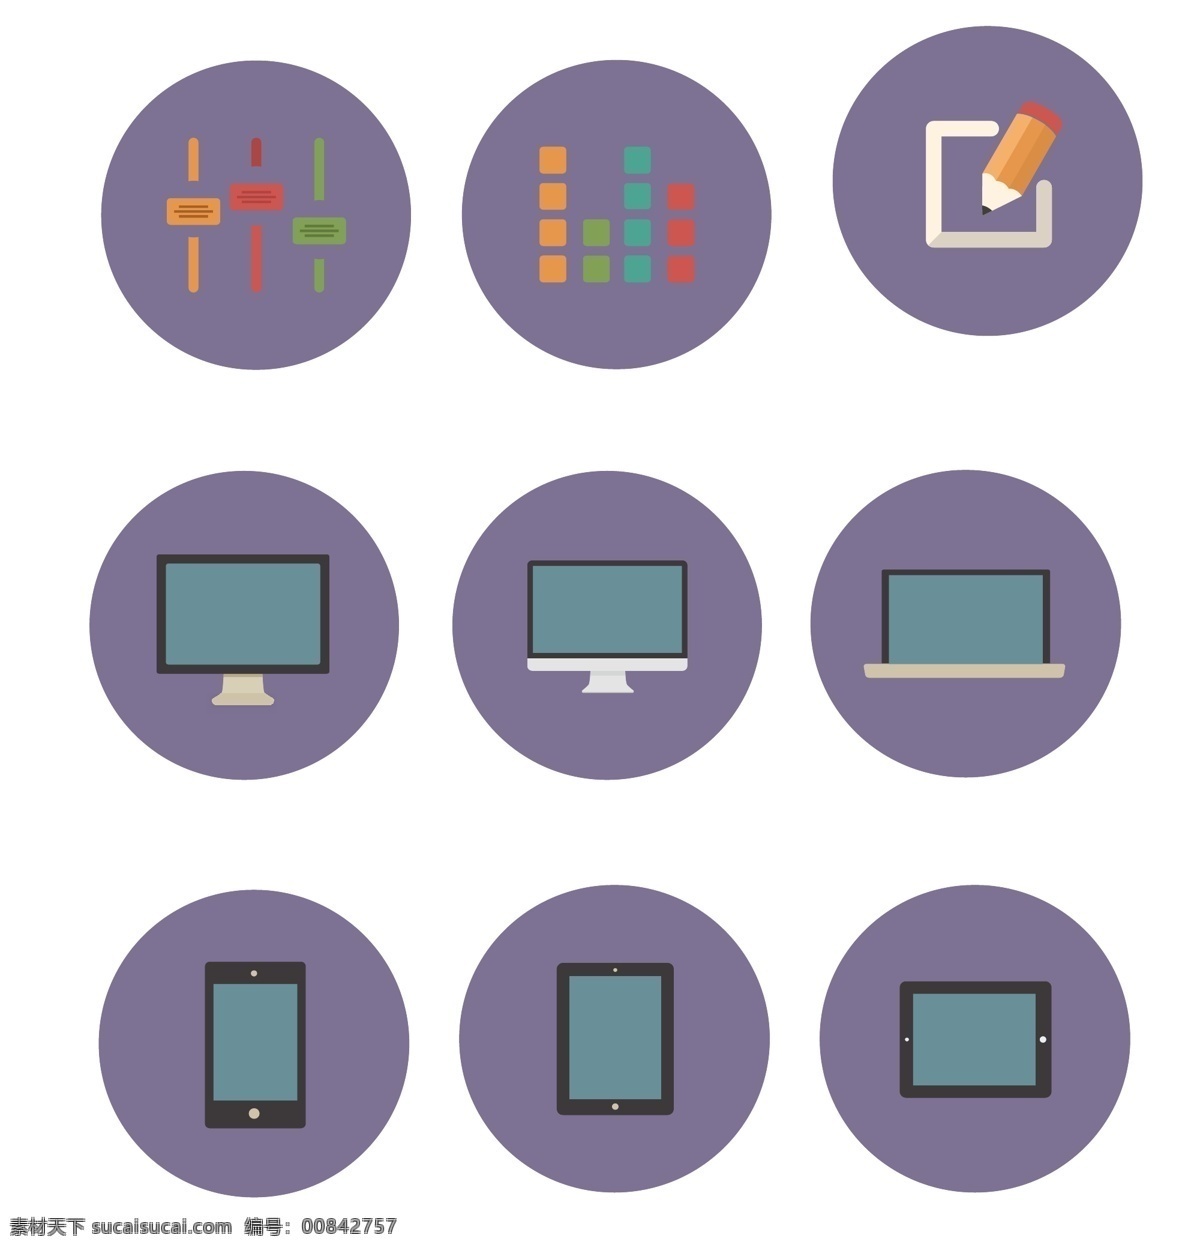 紫色小图标 电脑 手机 平板 矢量 下载素材 源文件 图标图案